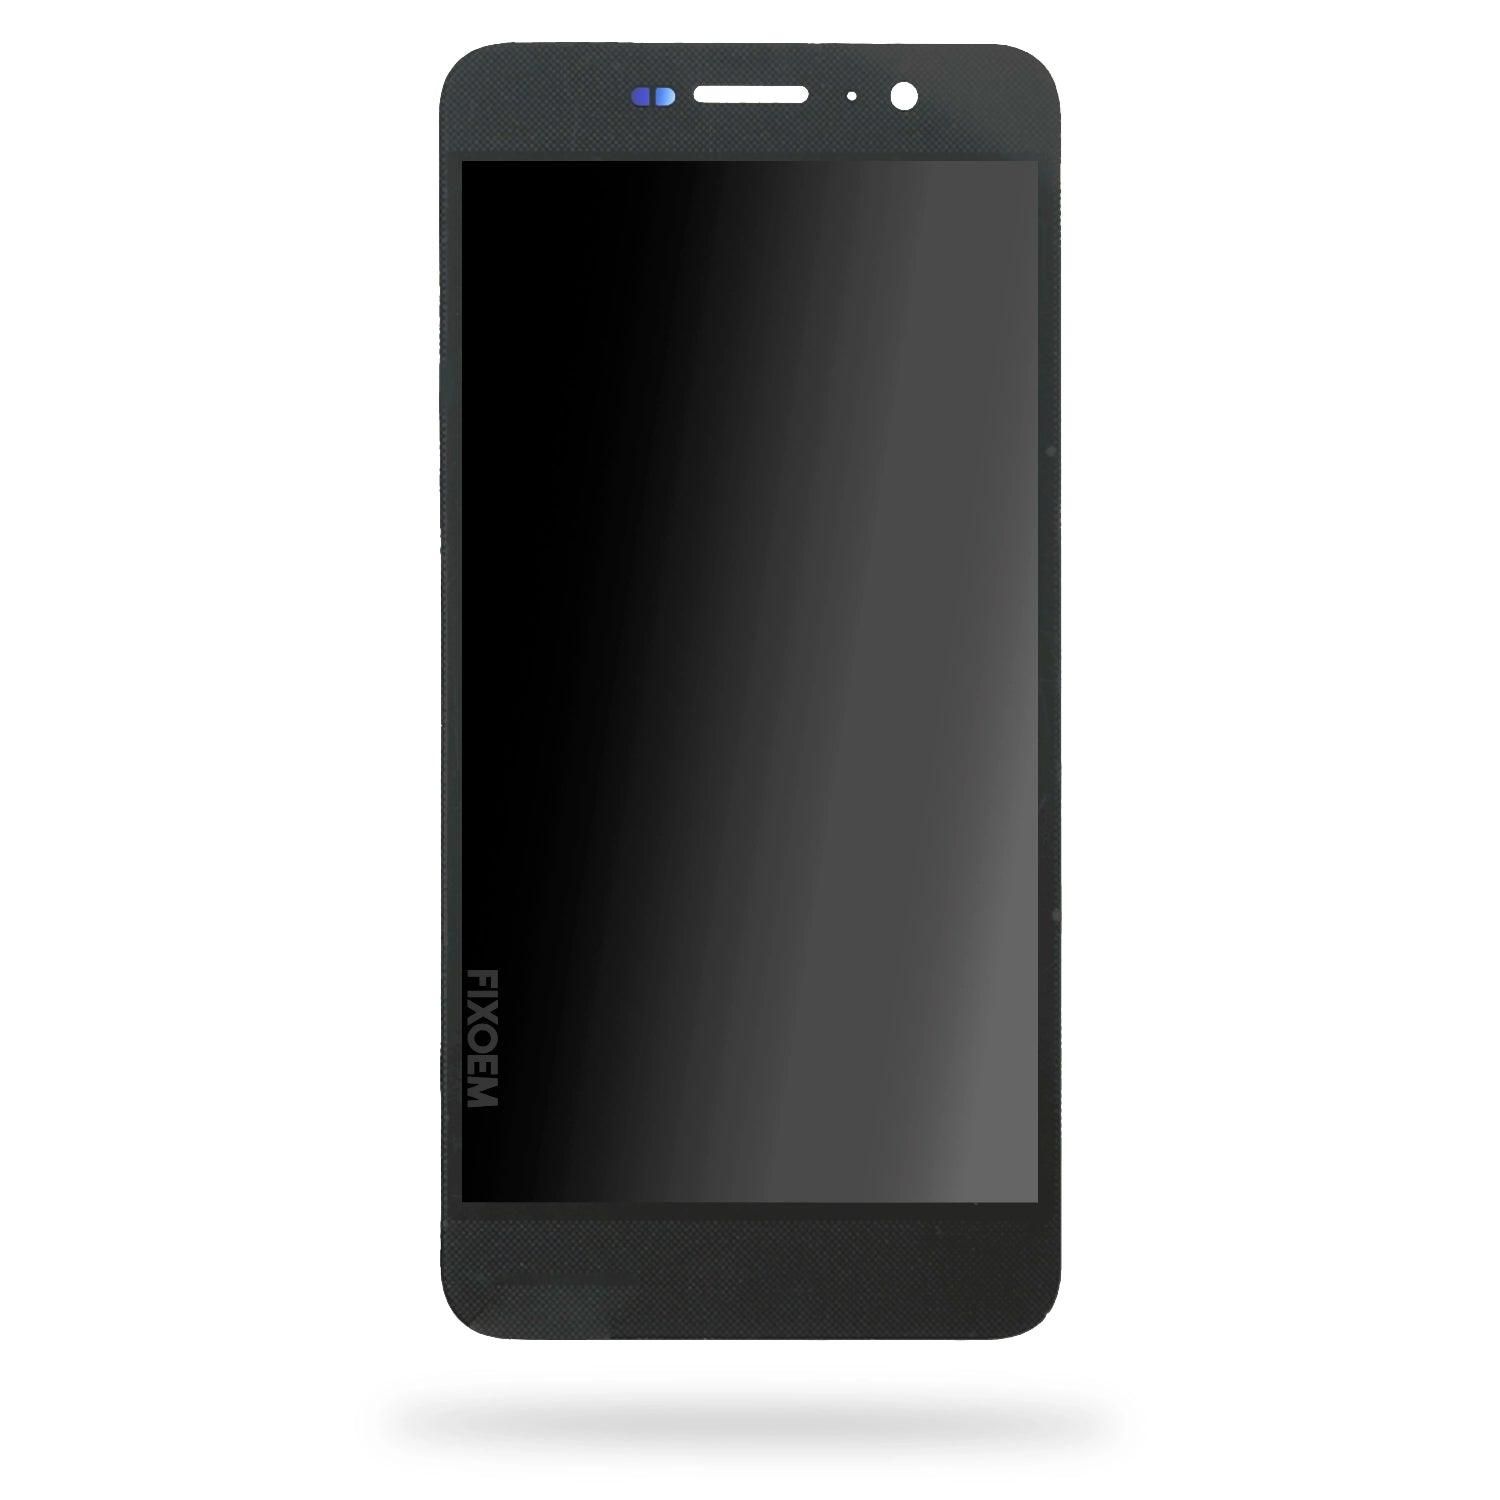 Display Huawei Y6 Pro IPS Tit-L01 Tit-Al00 Tit-U02 a solo $ 190.00 Refaccion y puestos celulares, refurbish y microelectronica.- FixOEM